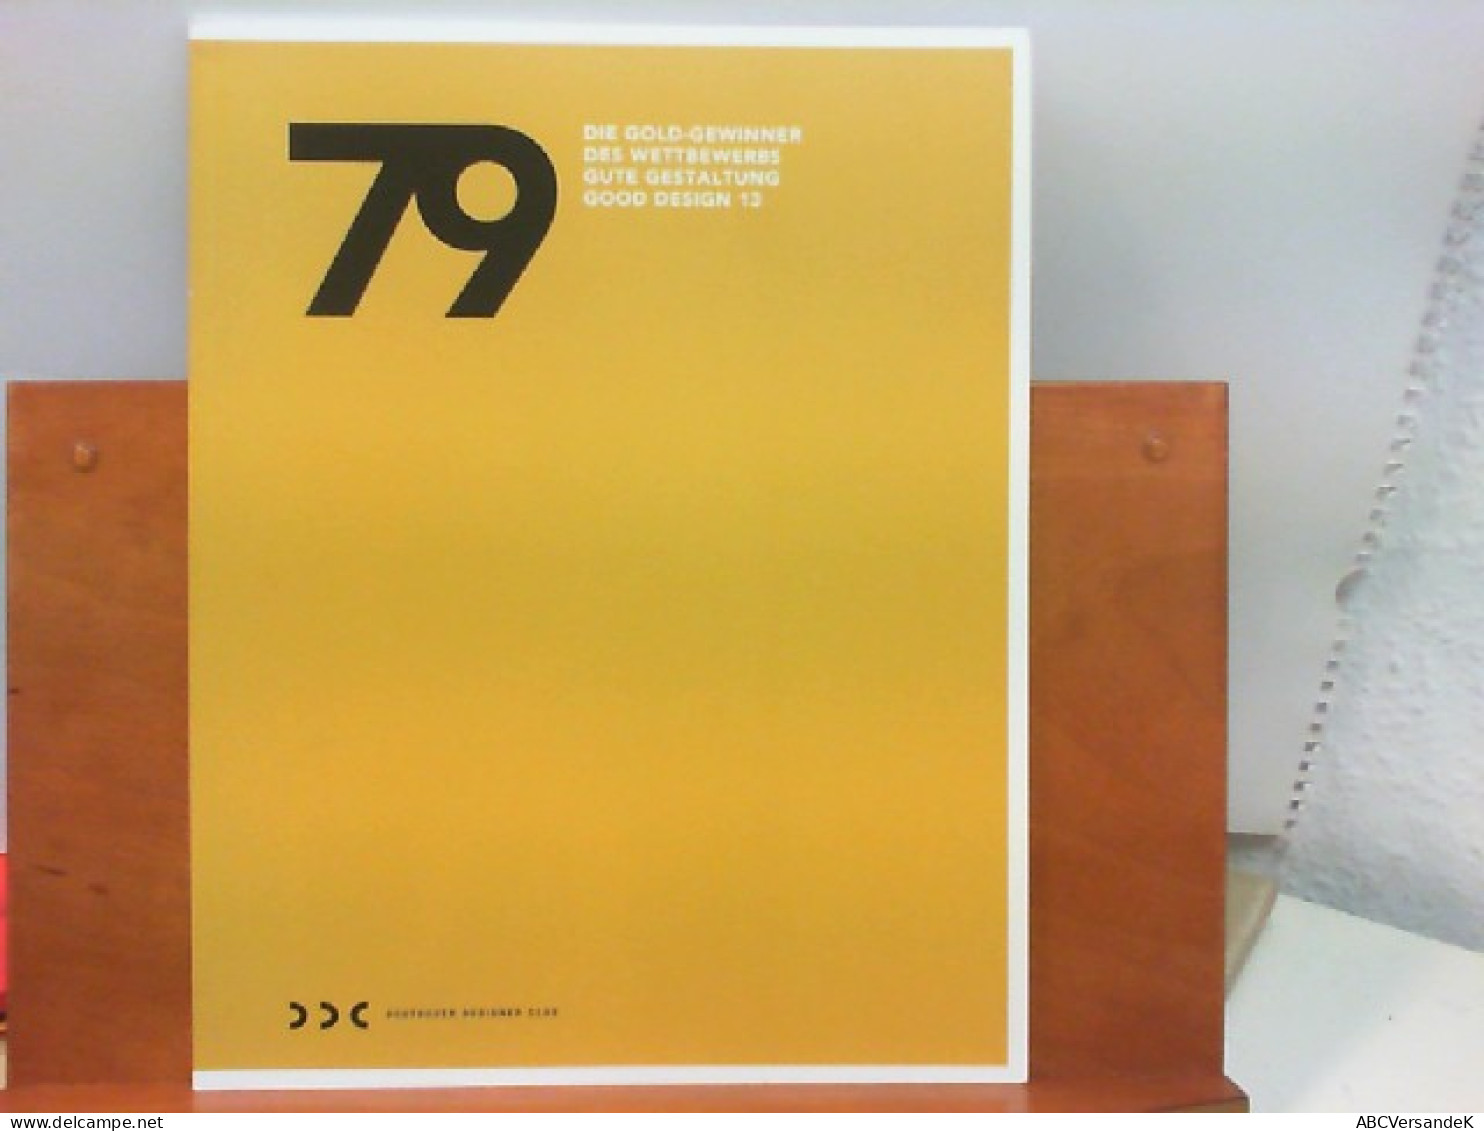 79 - Die Gold - Gewinner Des Wettbewerbs Gute Gestaltung Good Design 13 - Graphism & Design